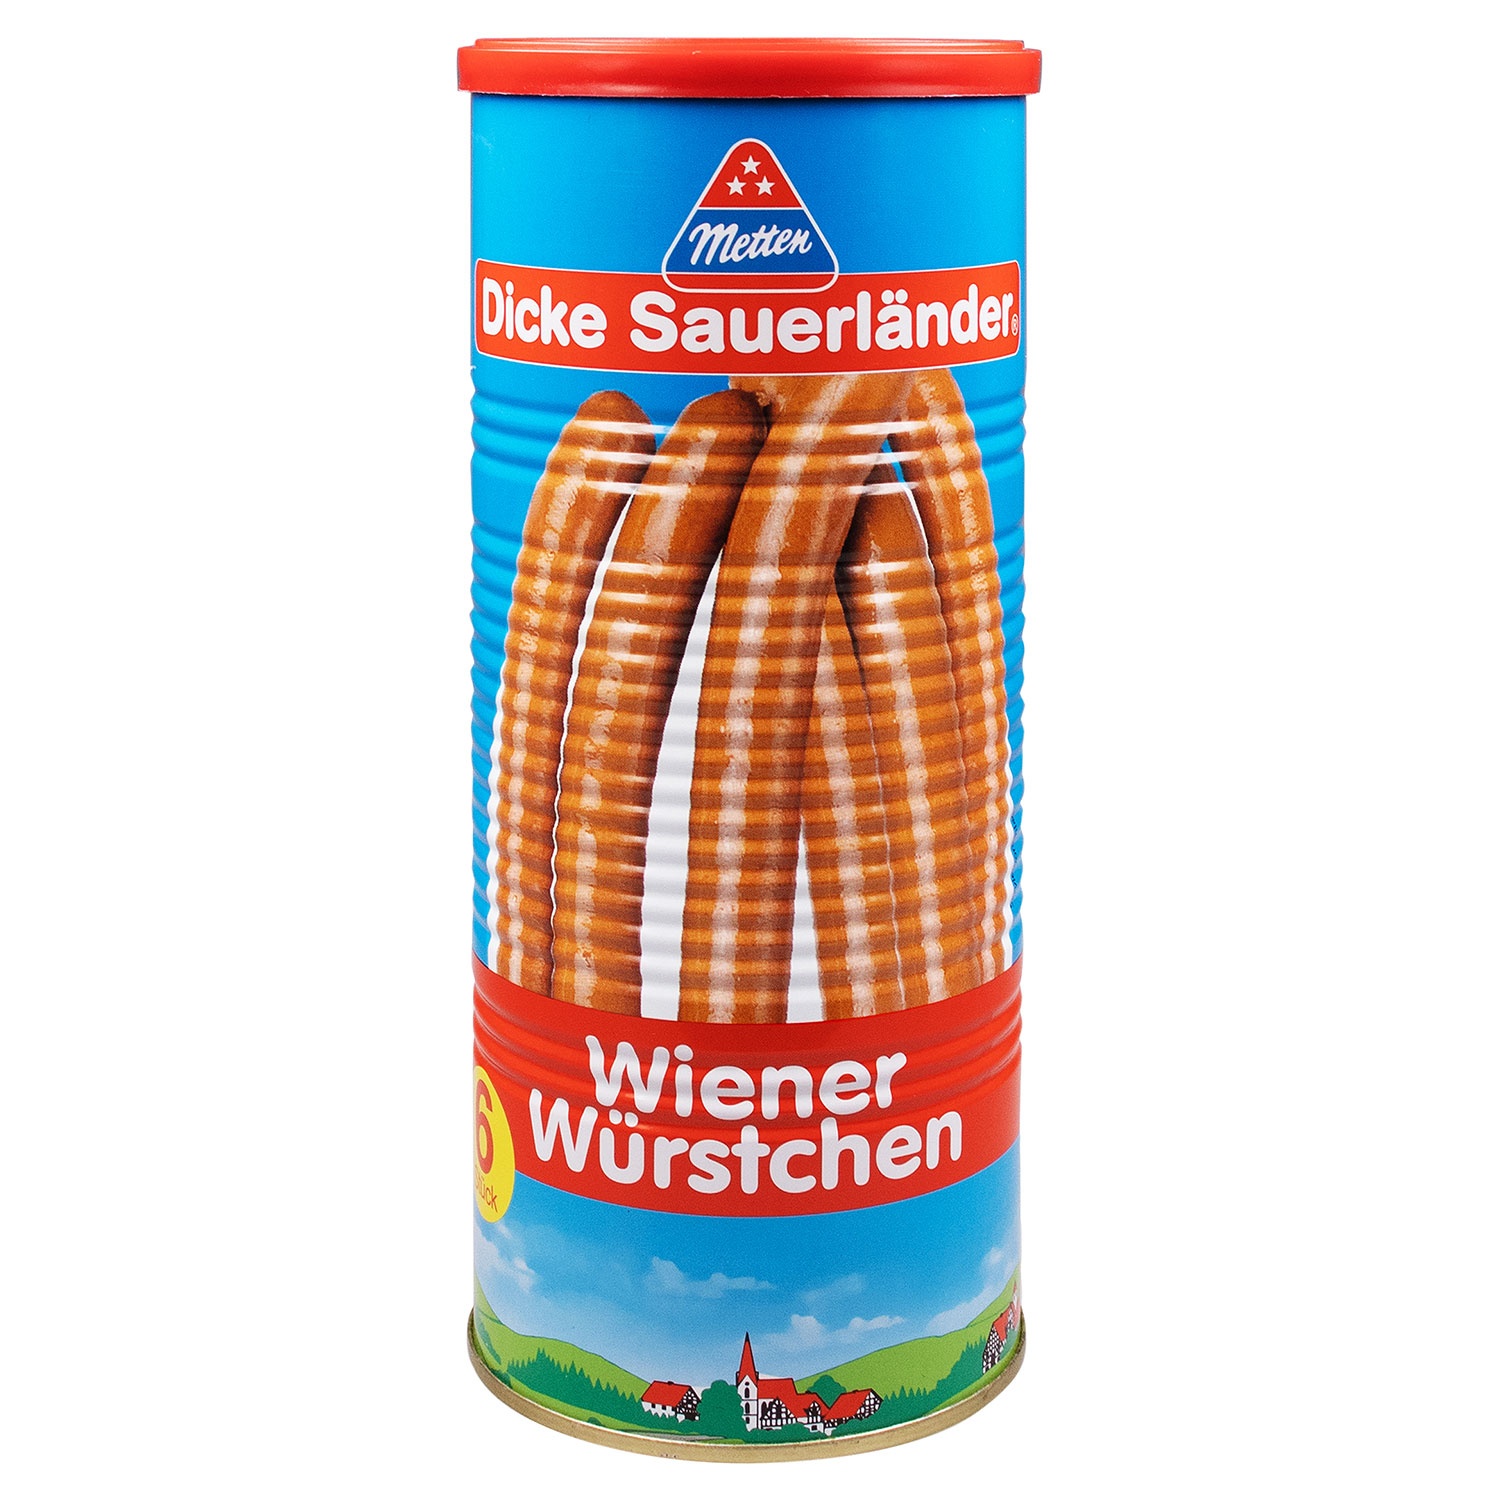 METTEN Dicke Sauerländer Wiener Würstchen 690 g